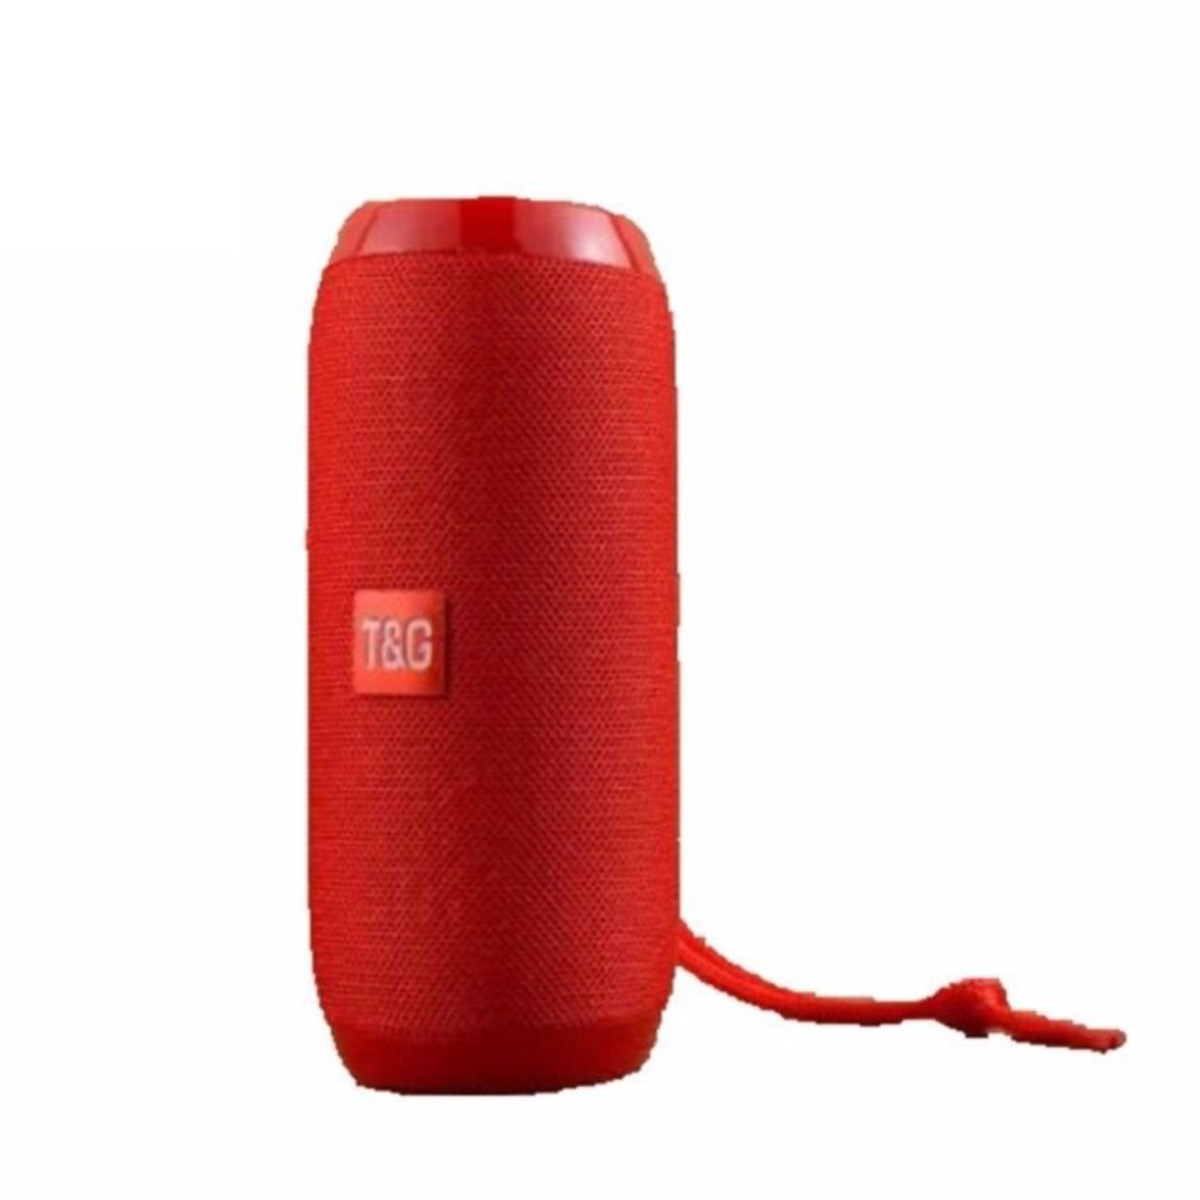 M2-TEC Lautsprecher Lautsprecher Rot Bluetooth Lautsprecher